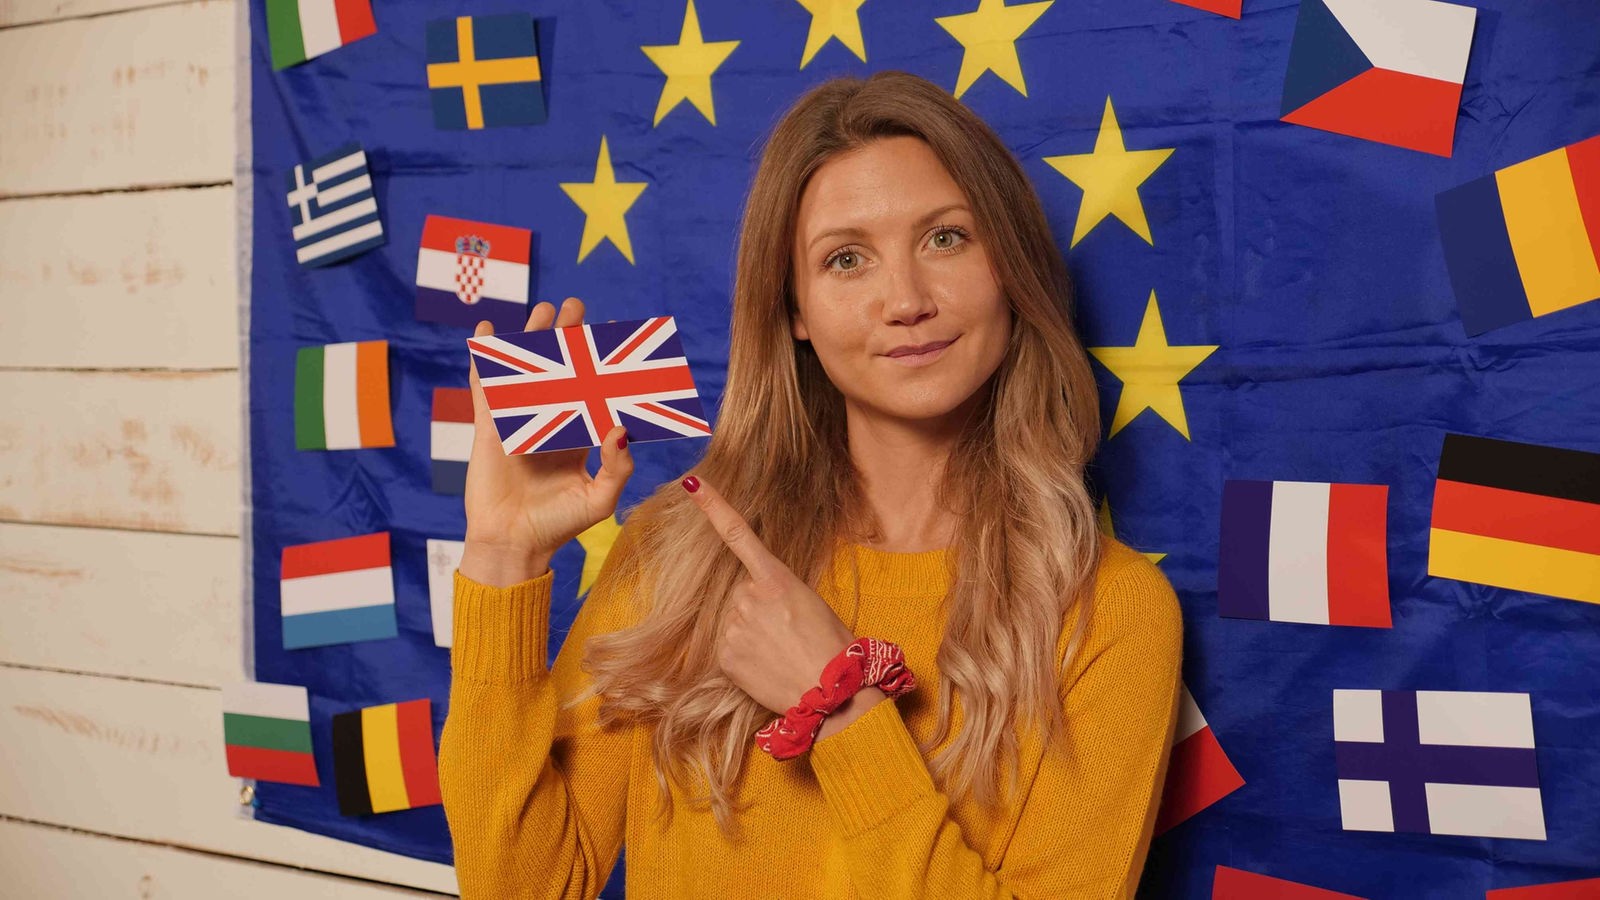 Jana vor einer weißen Holzwand mit großer EU-Flagge, in der Hand hat sie die Nationalflagge des Vereinigten Königreichs Großbritannien und Nordirland.